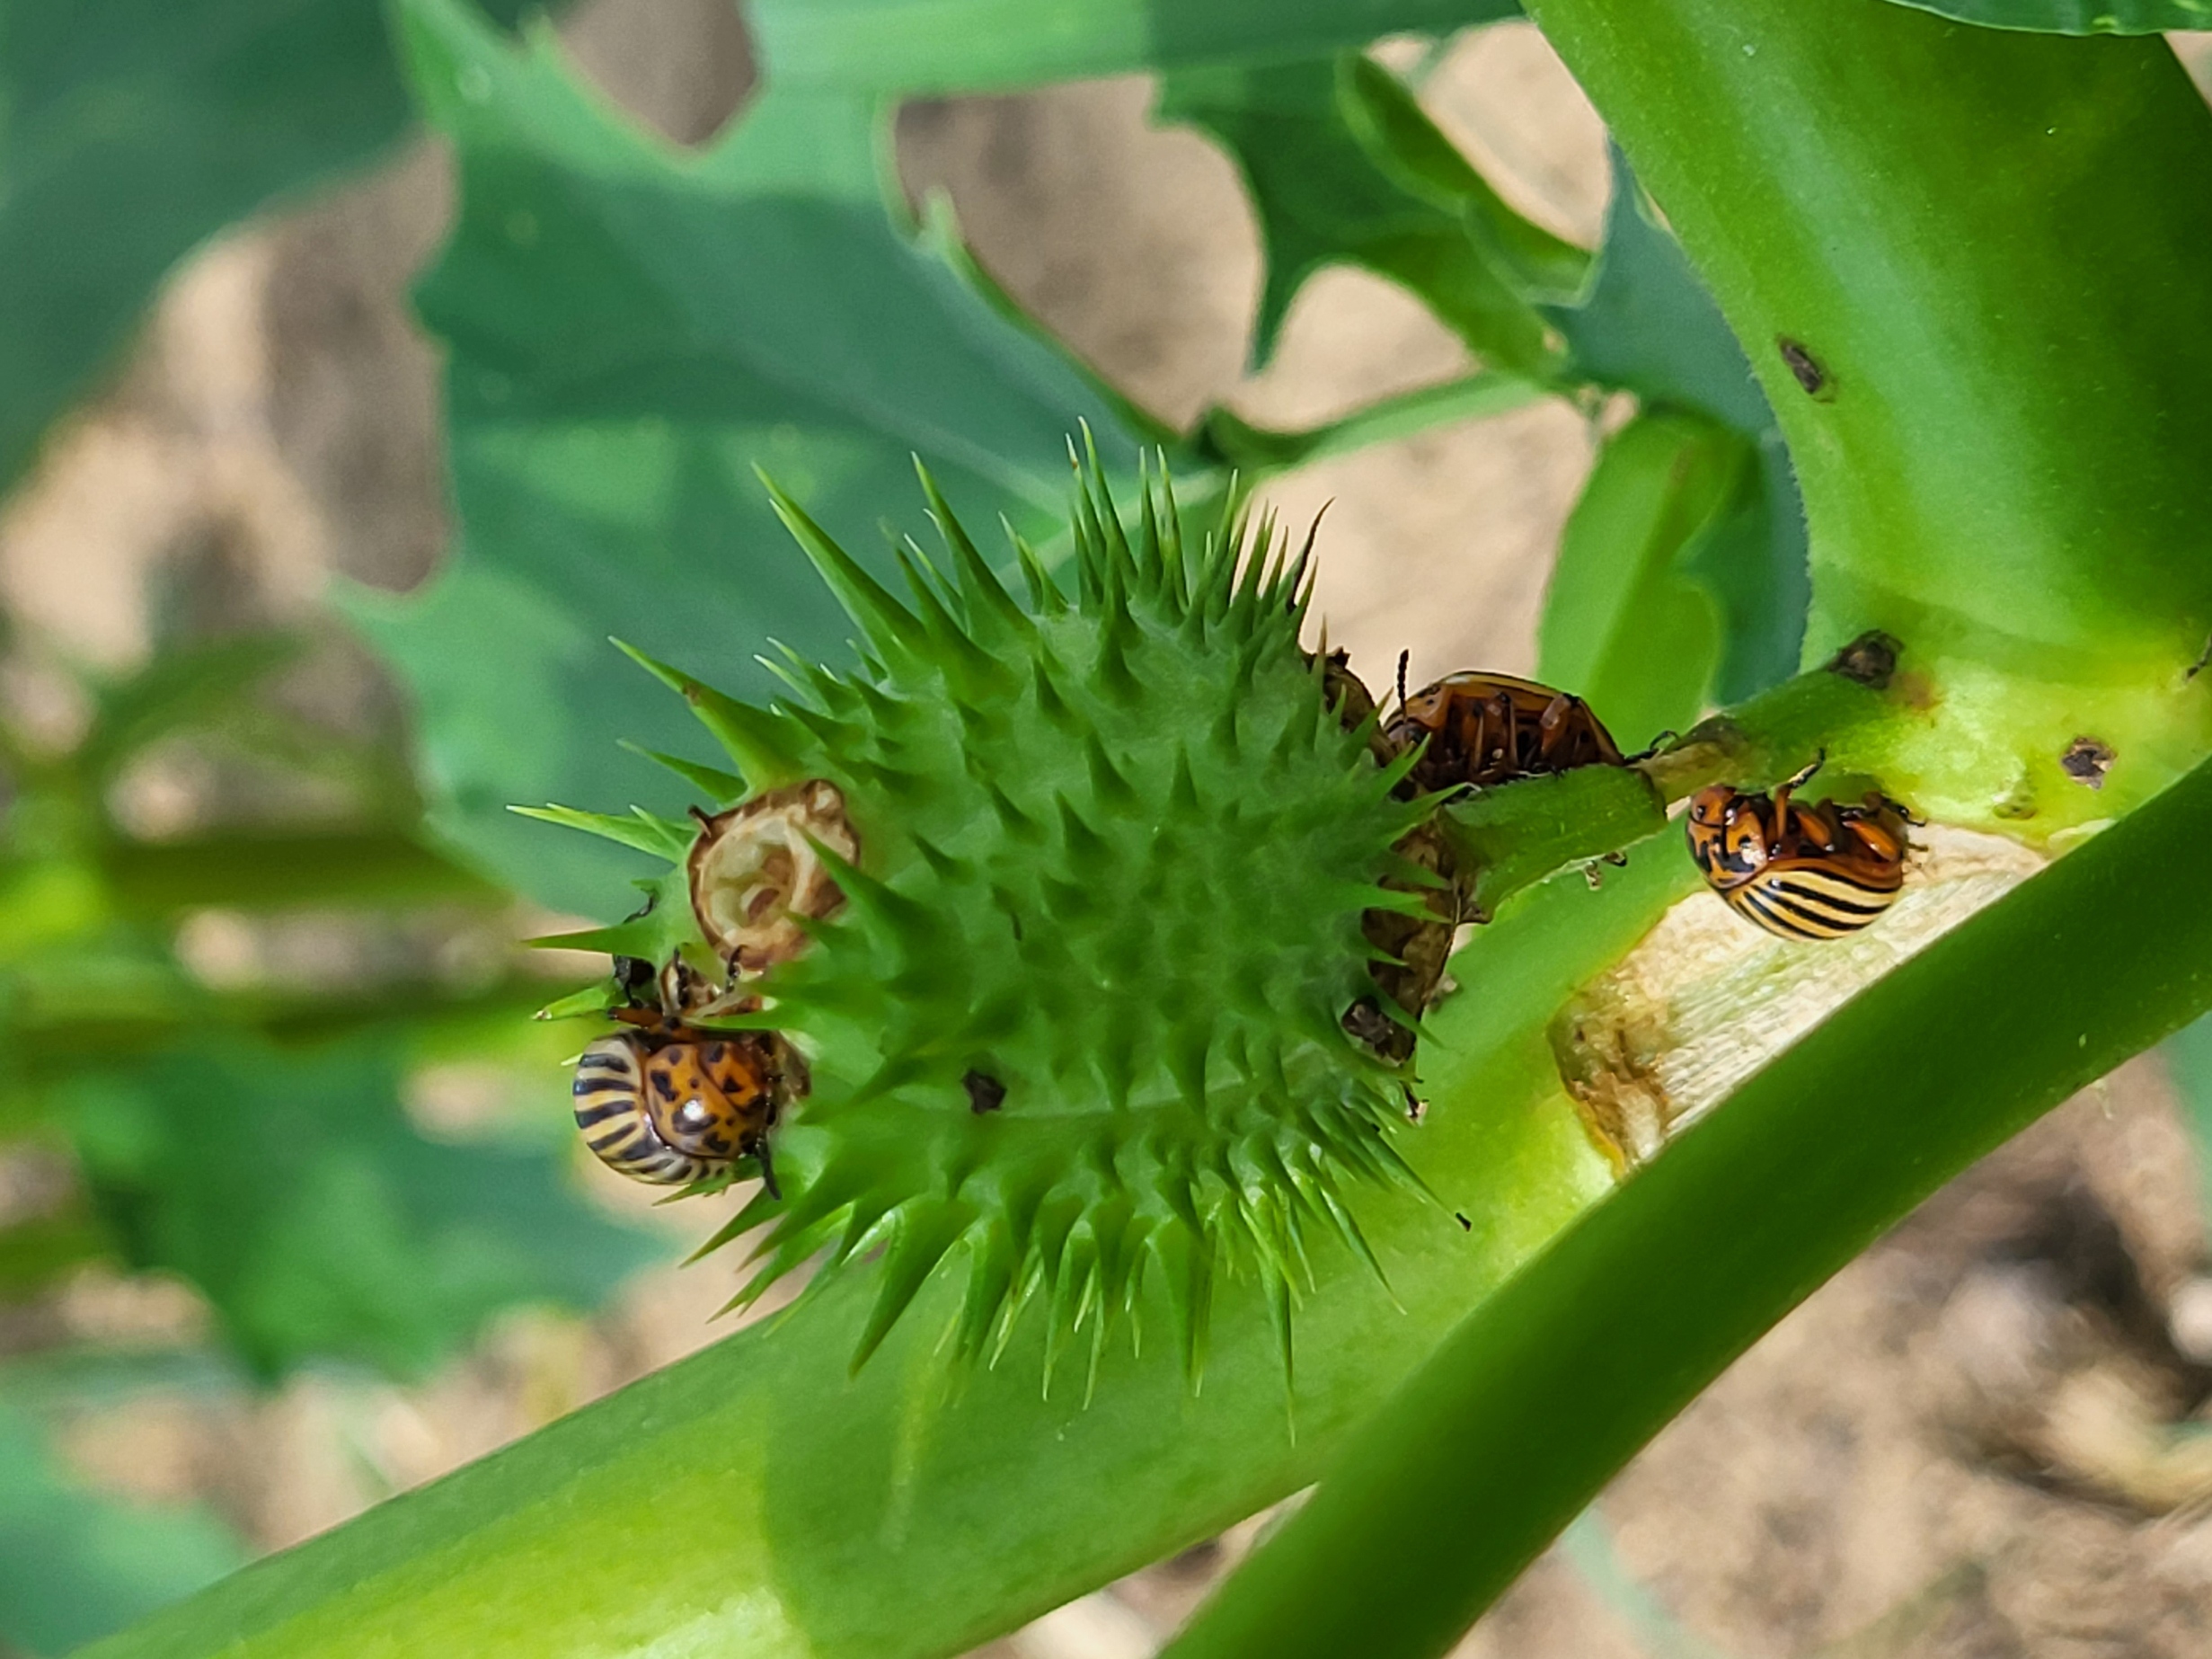 Colorado Potato Beetles on a plant.